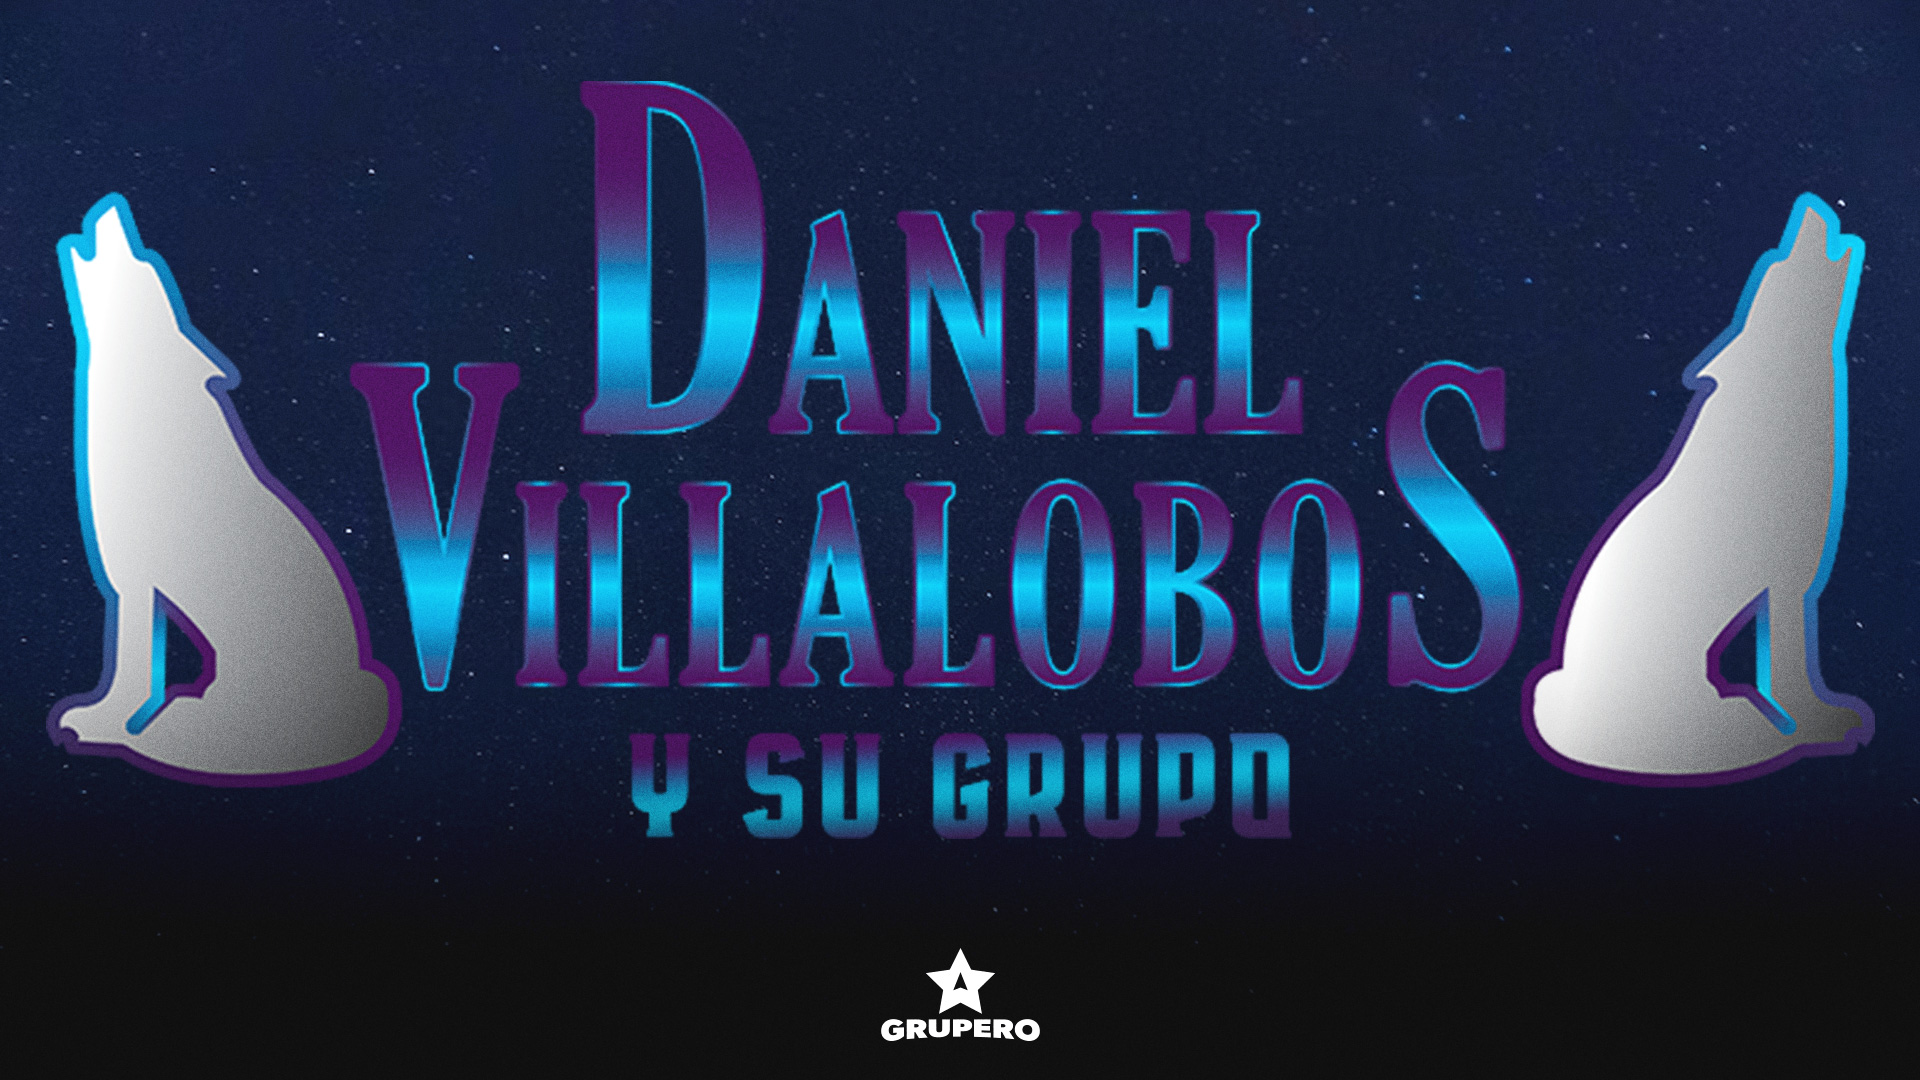 Daniel Villalobos – Biografía